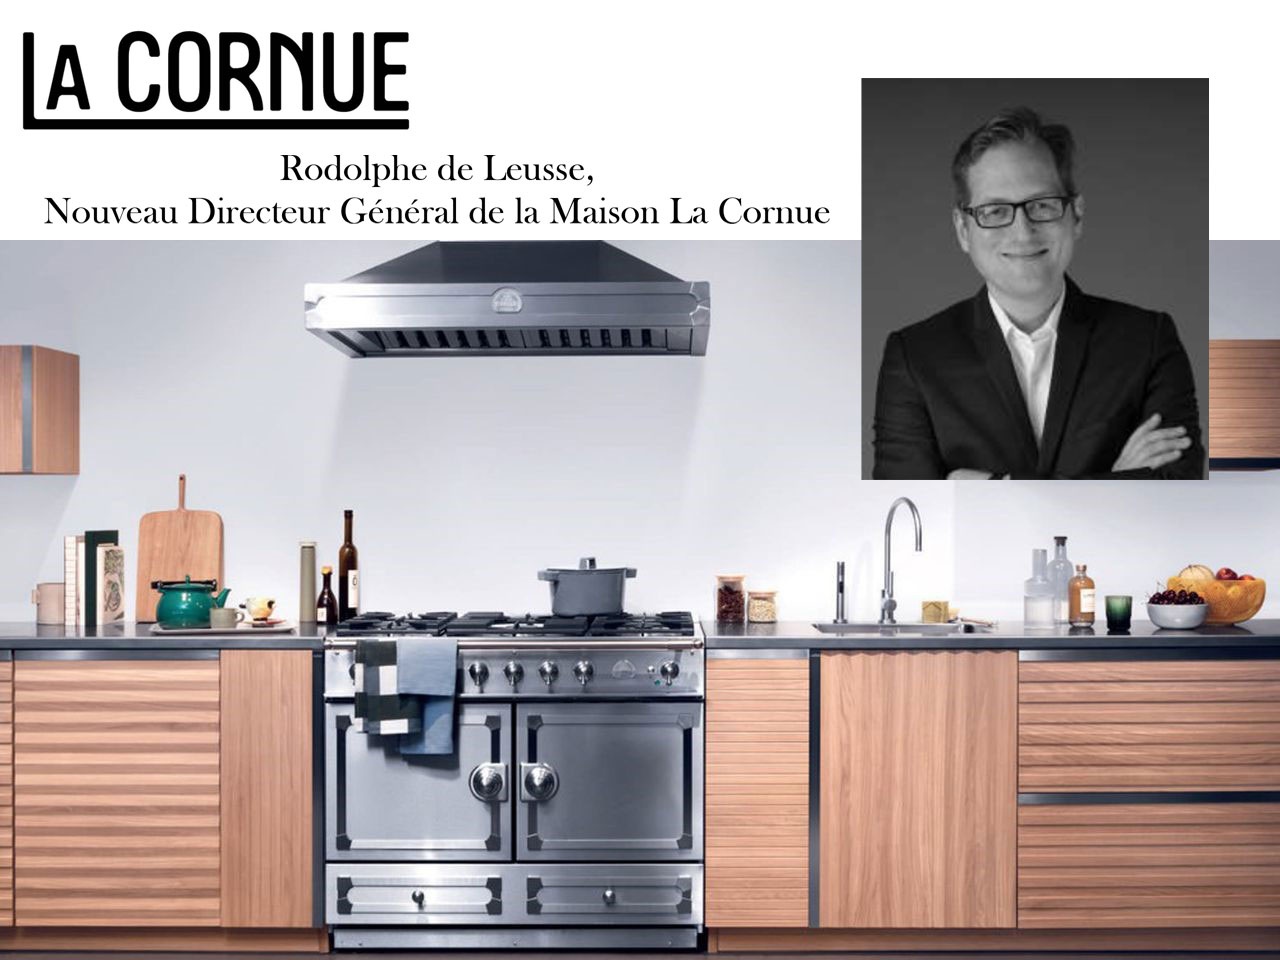 L’iconique Maison La Cornue présente Rodolphe de Leusse, son nouveaux Directeur Général